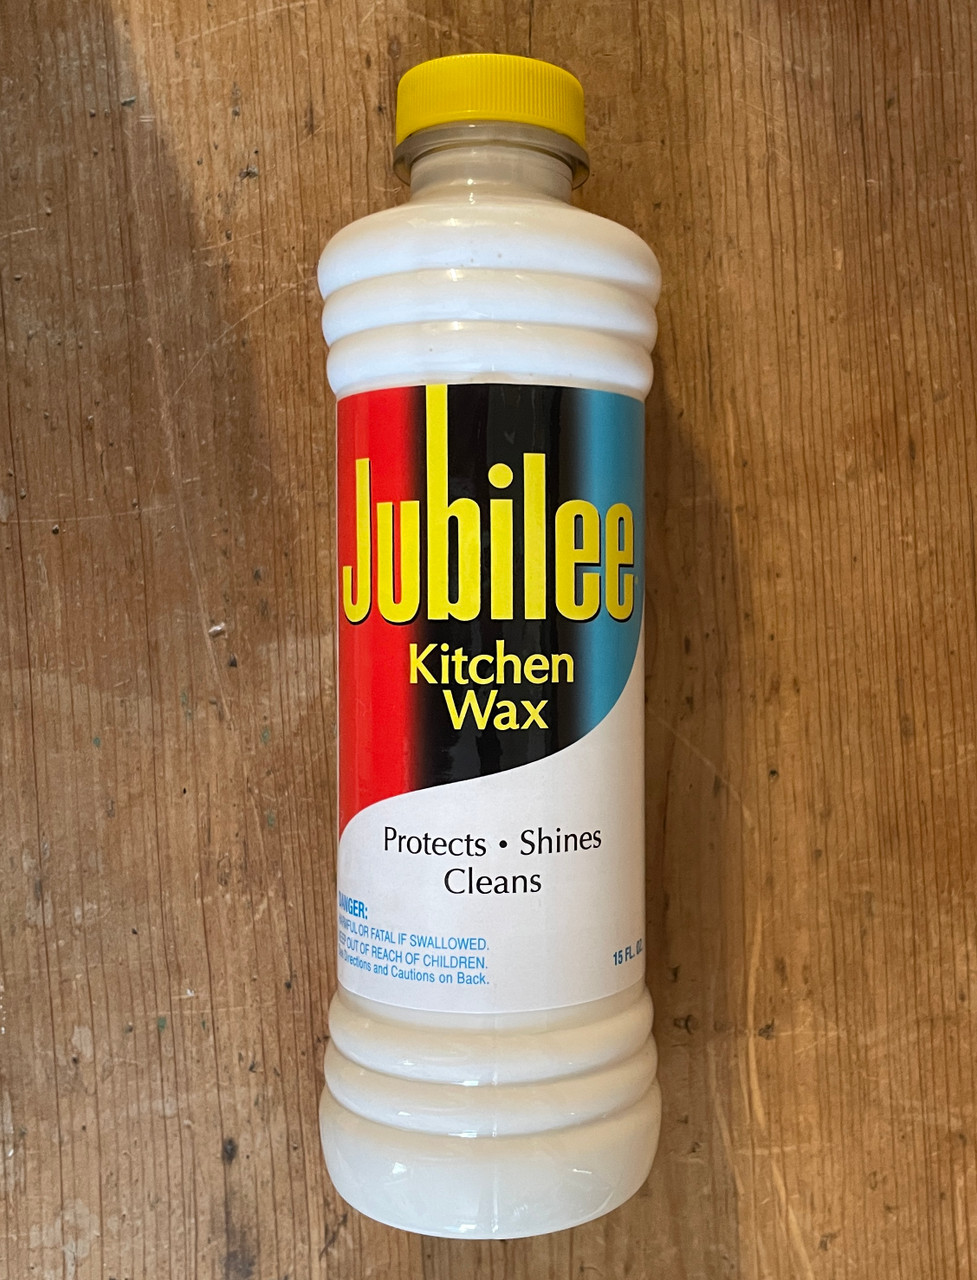 Jubilee Kitchen Wax